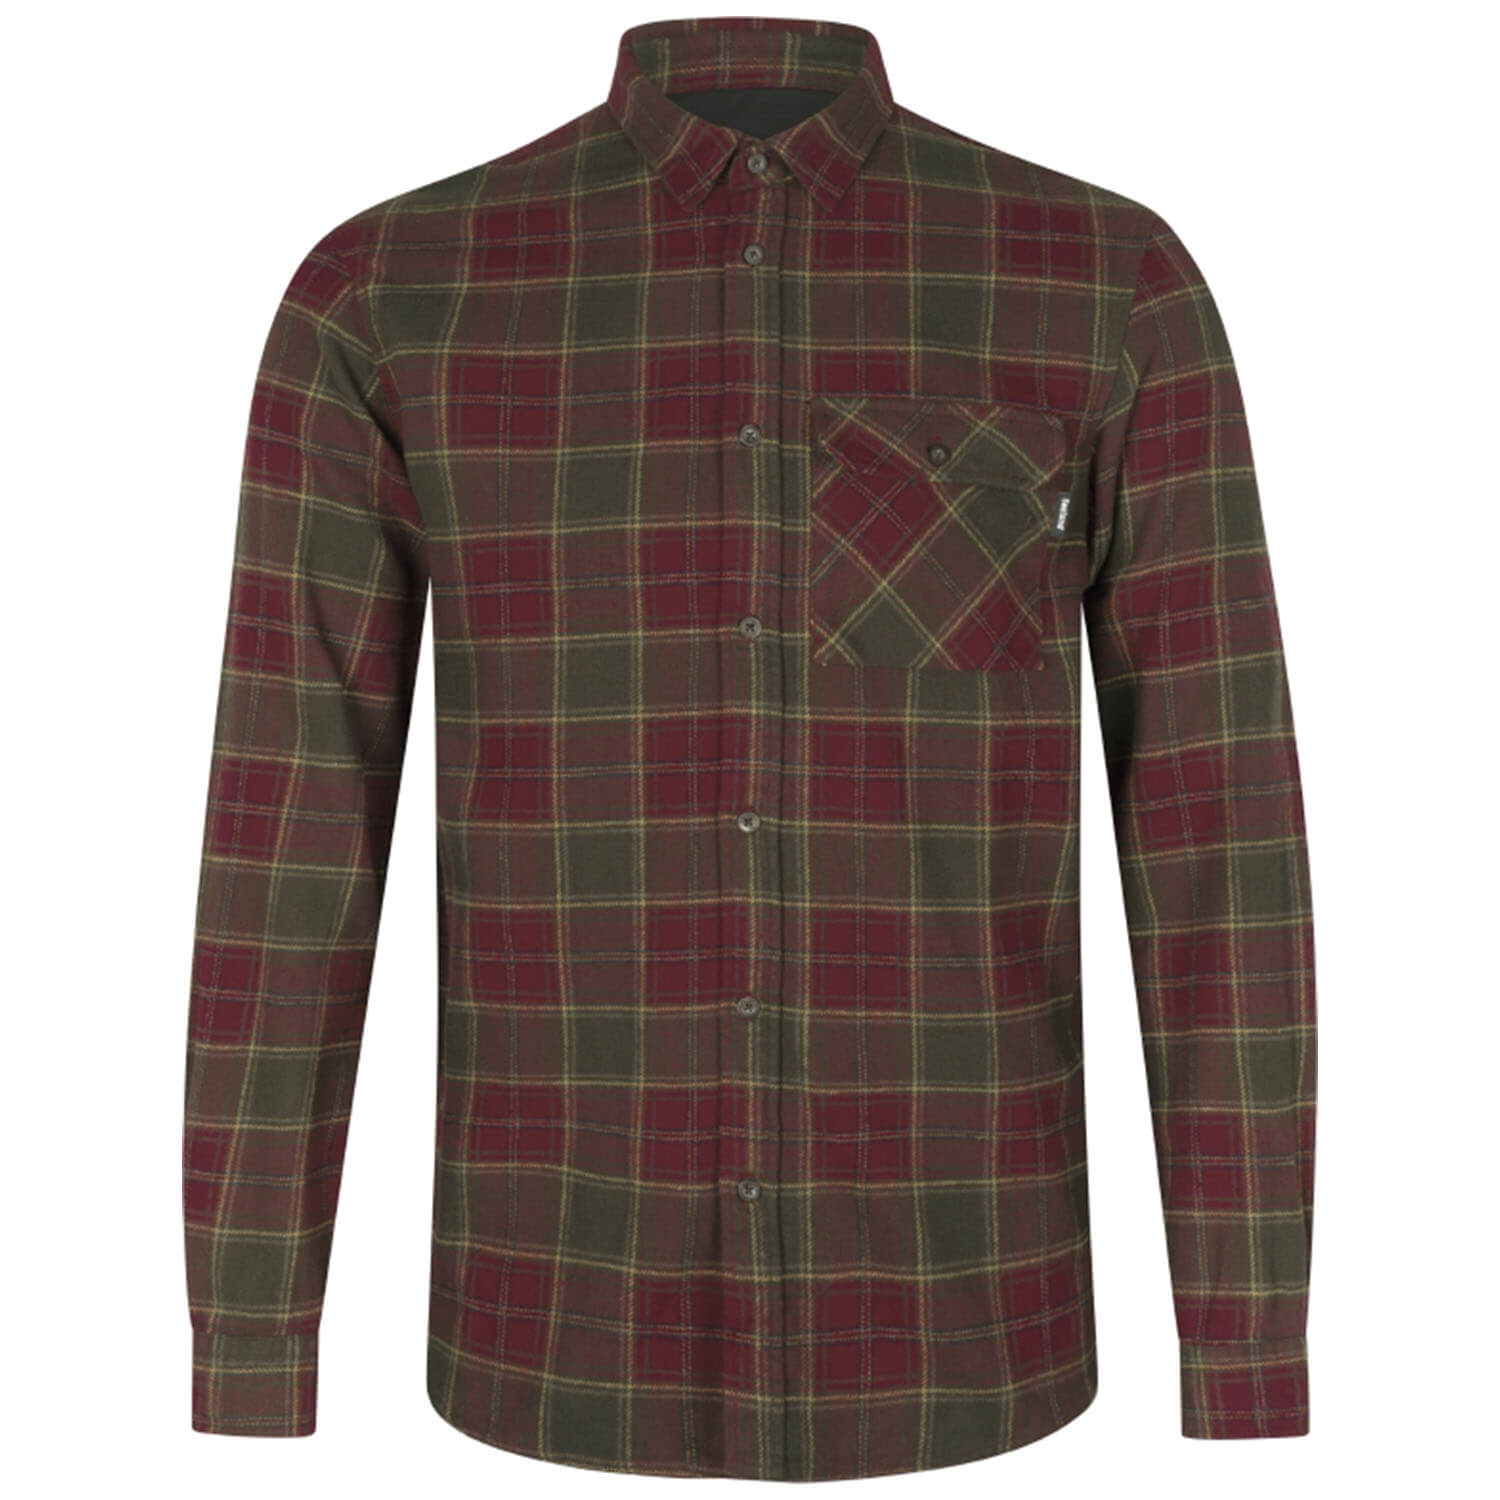  Seeland Jachthemd Glen (Rode bosruit) - Overhemden